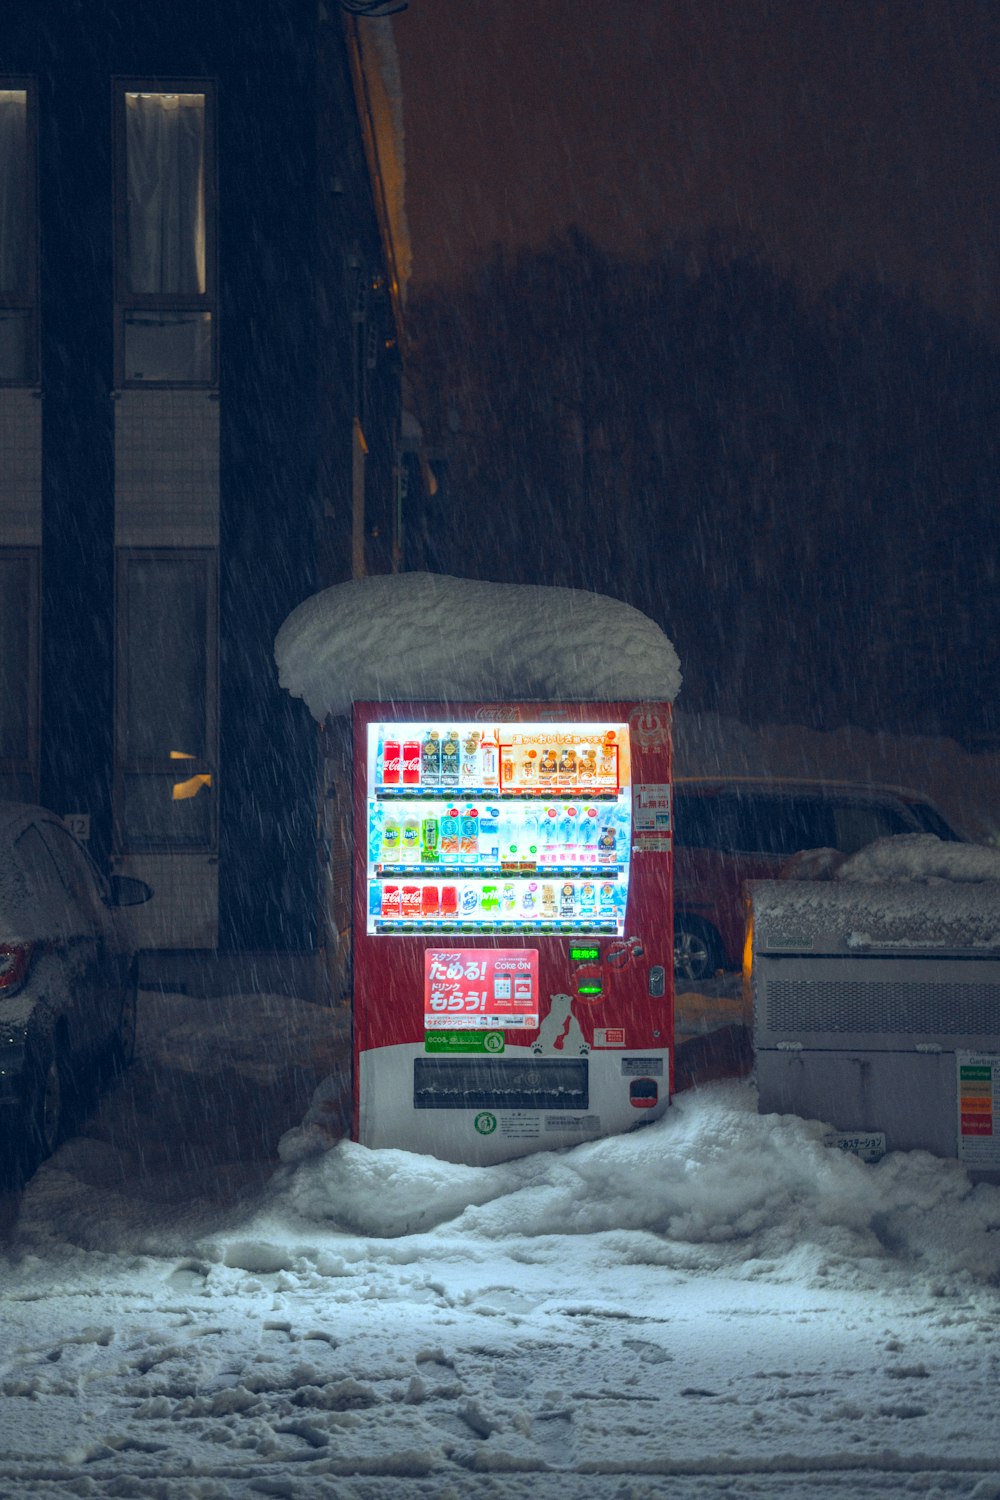 눈 덮인 거리 한가운데에 앉아있는 자판기